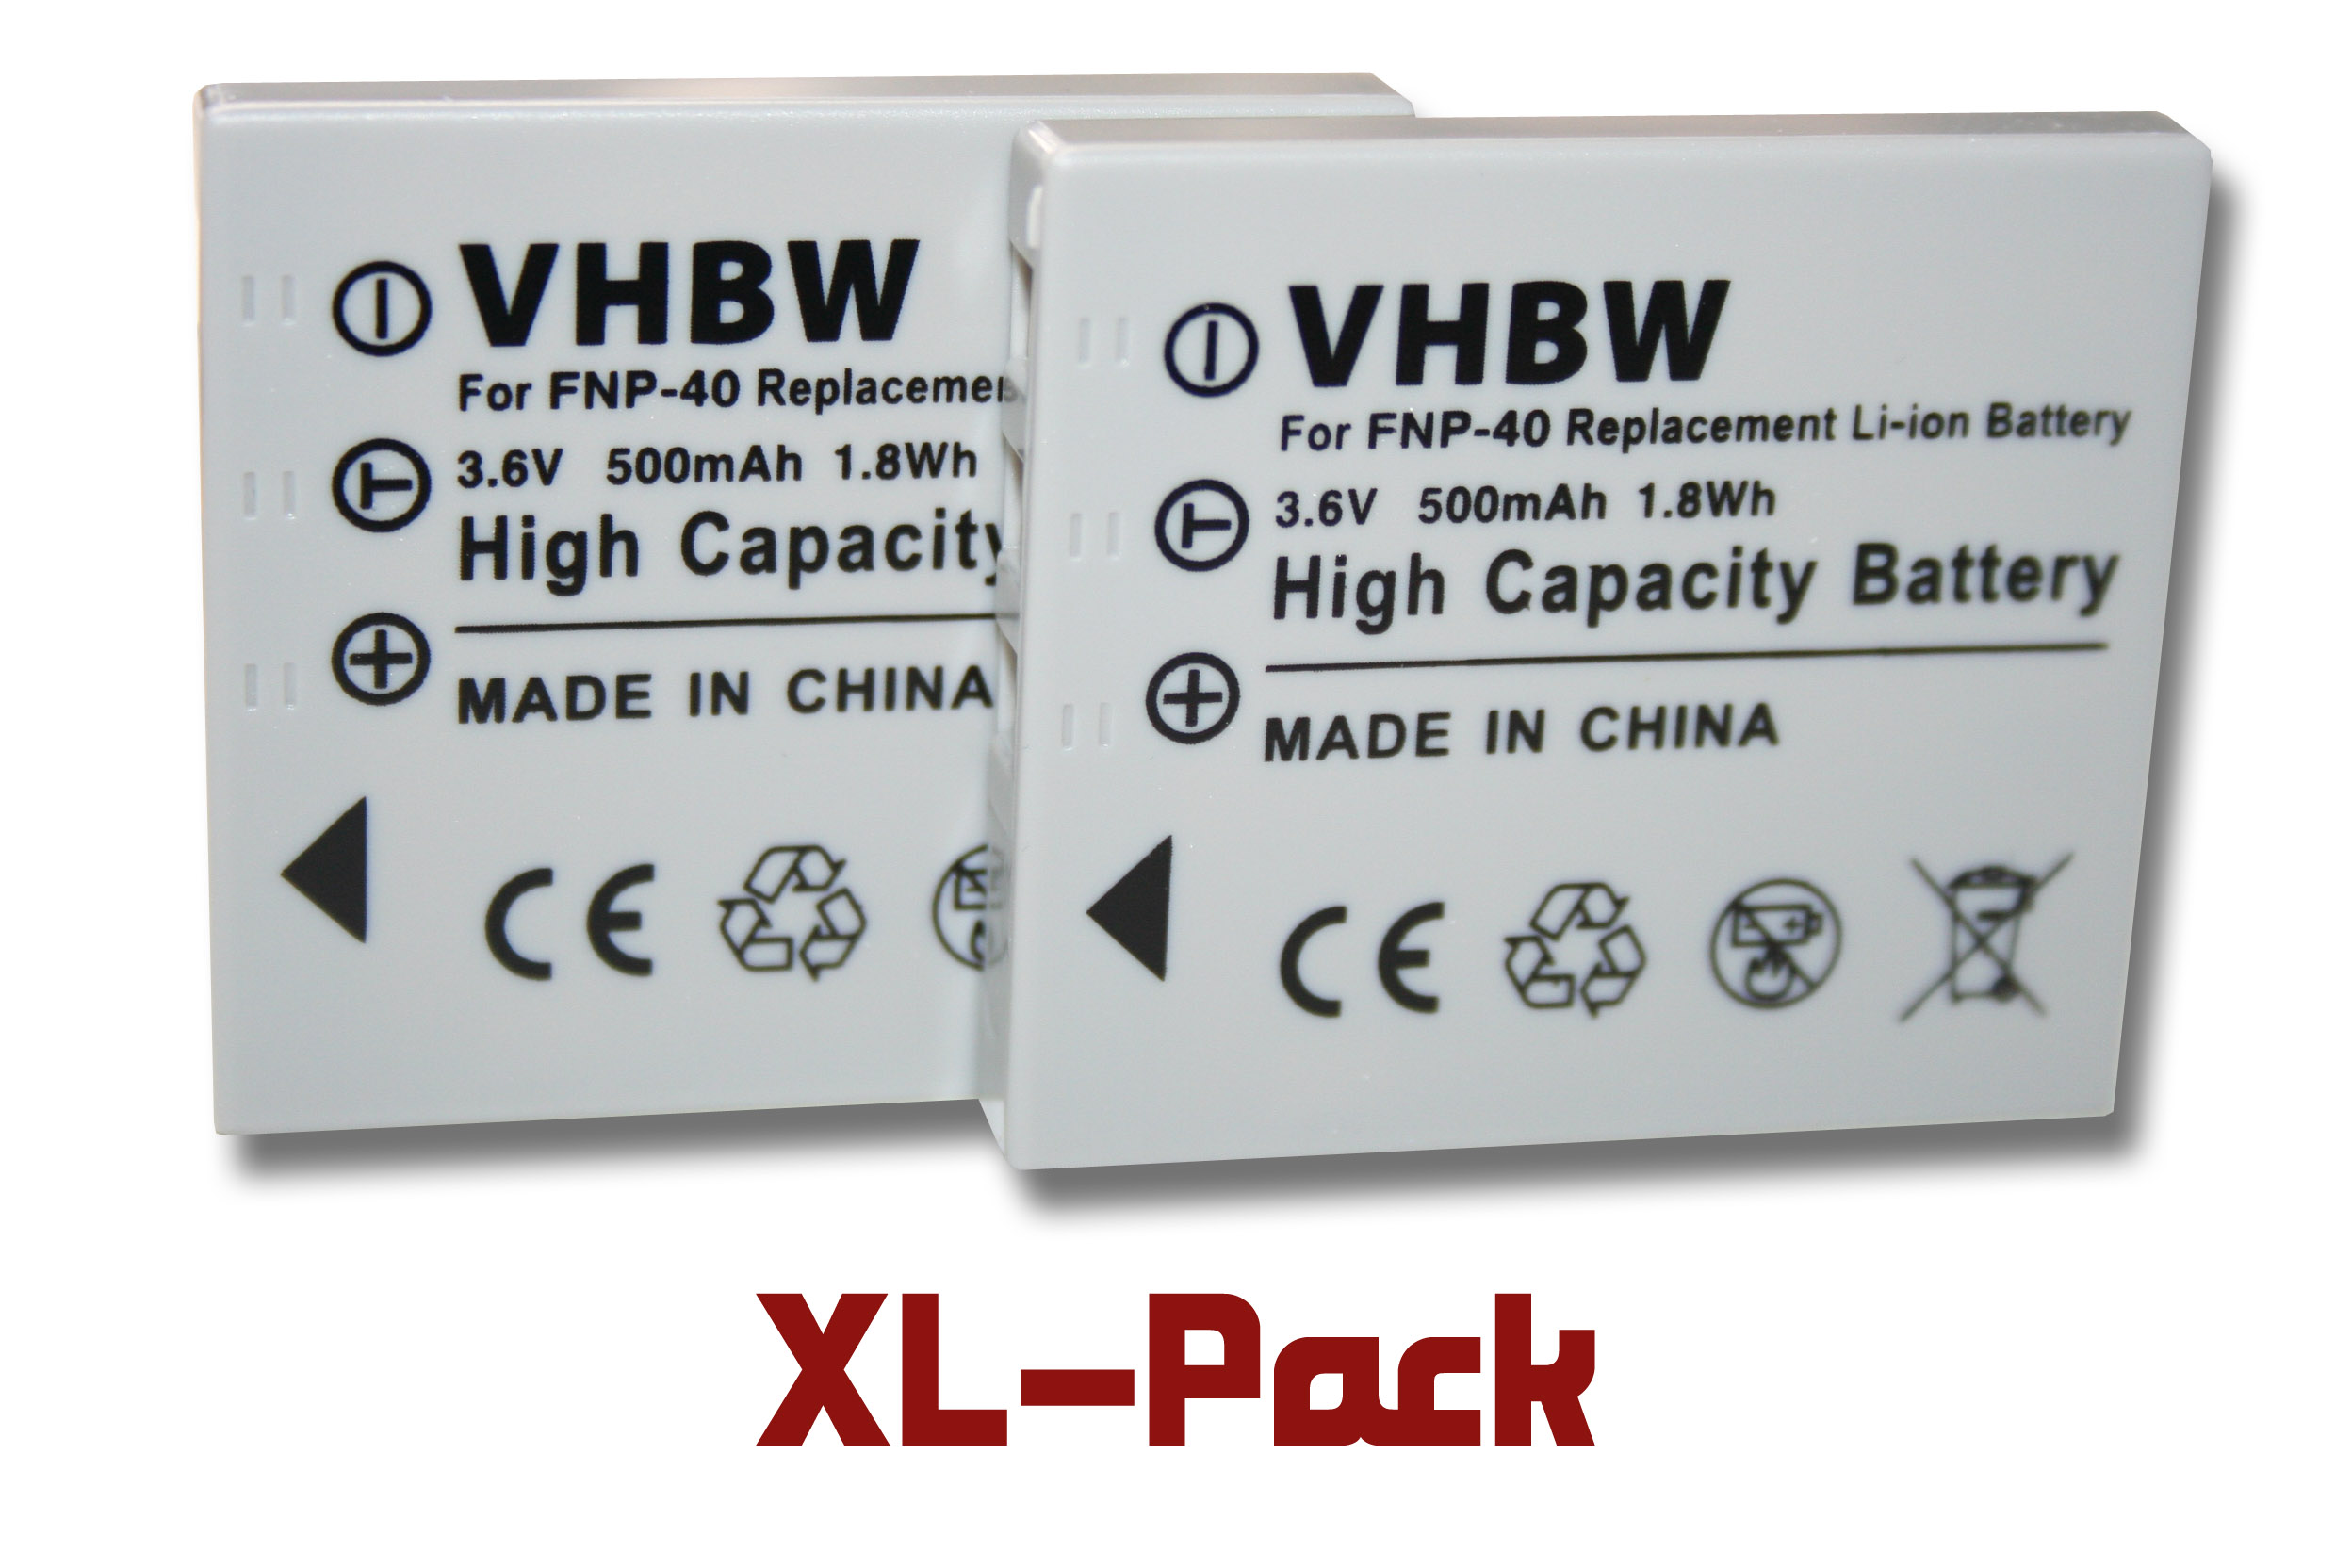 VHBW kompatibel mit Samsung L700, Volt, L50, Akku L70, OPS, i6, NV3, L60, i70, NV7 L80, 3.6 Kamera, L73, Li-Ion i50, i5 Digimax 500 